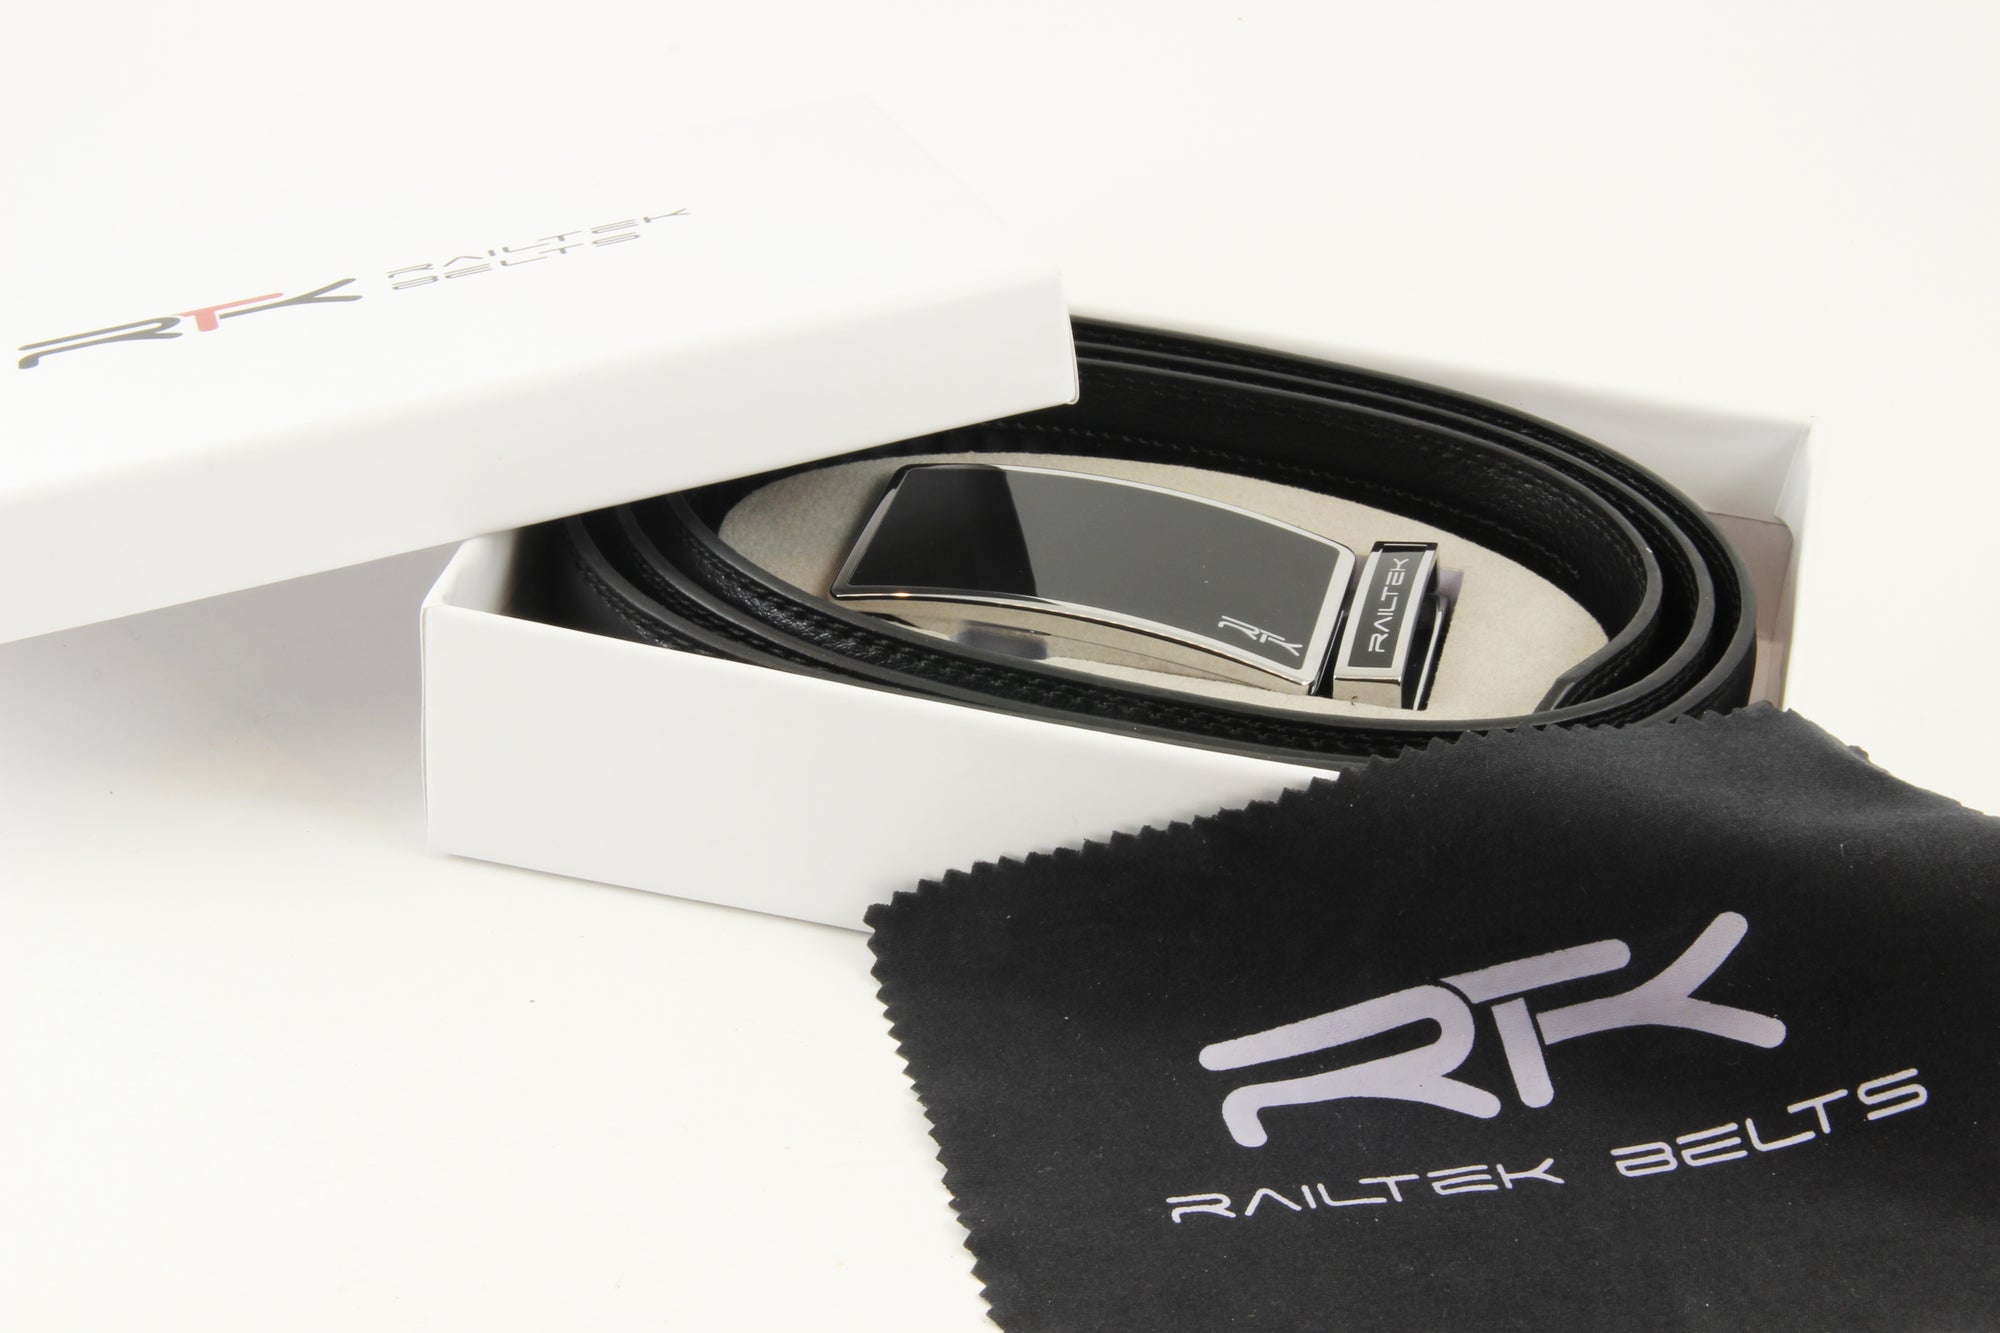 Railtek Ratchet Belt - Square Leather Zinc / Yellow - Contrast Stitch